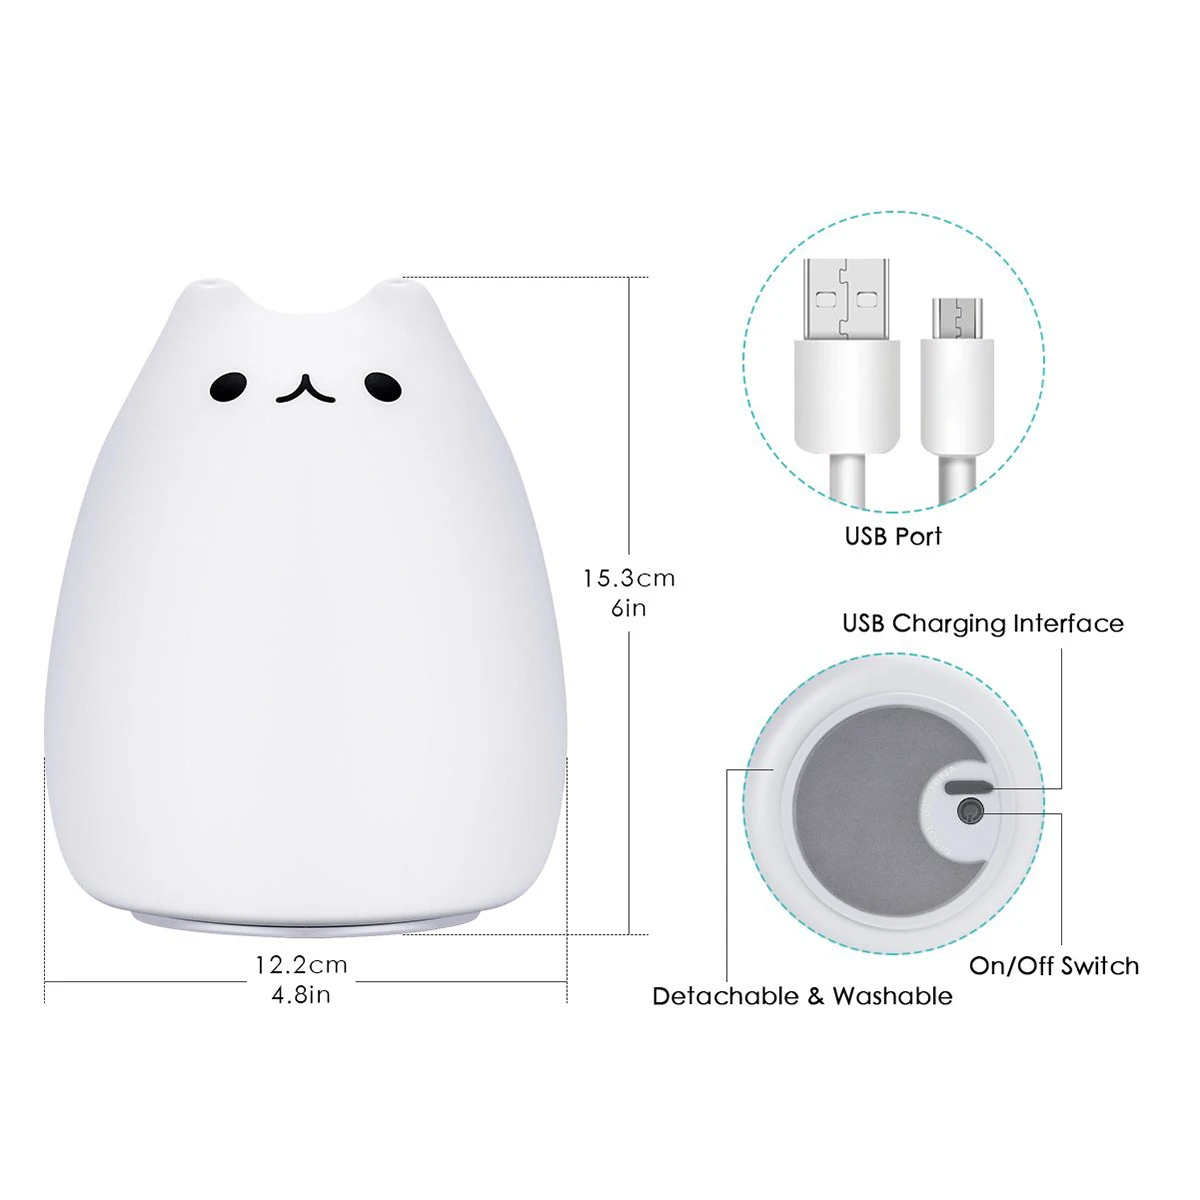 Милый Кот силиконовый светодиодный ночной Светильник USB Перезаряжаемые сенсорный Управление ночник с теплый белый и 7-Цвет дыхание режимы